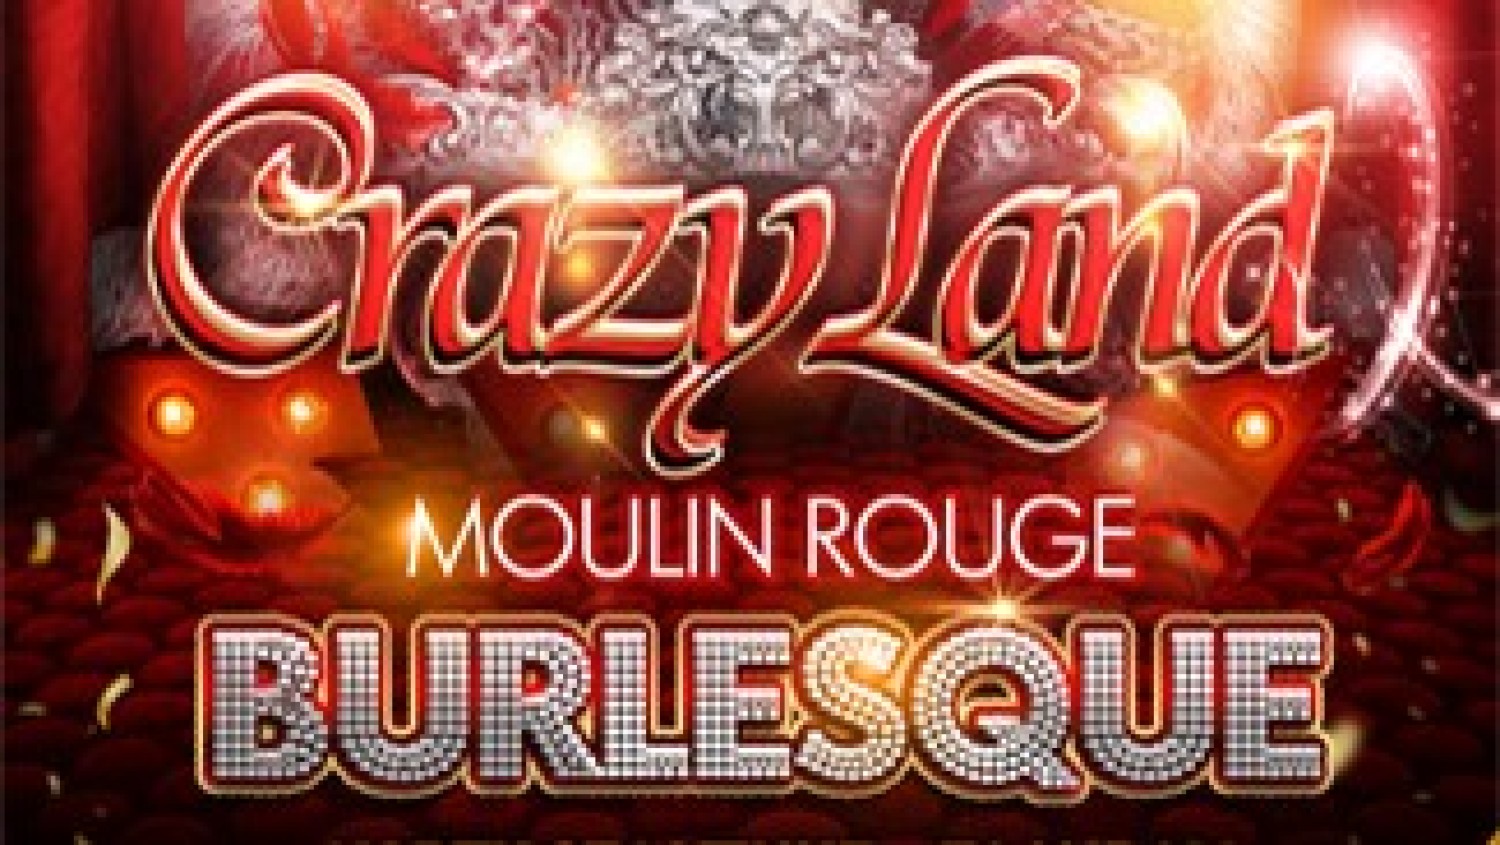 Party nieuws: Early bird tickets Crazyland Moulin Rouge in verkoop!